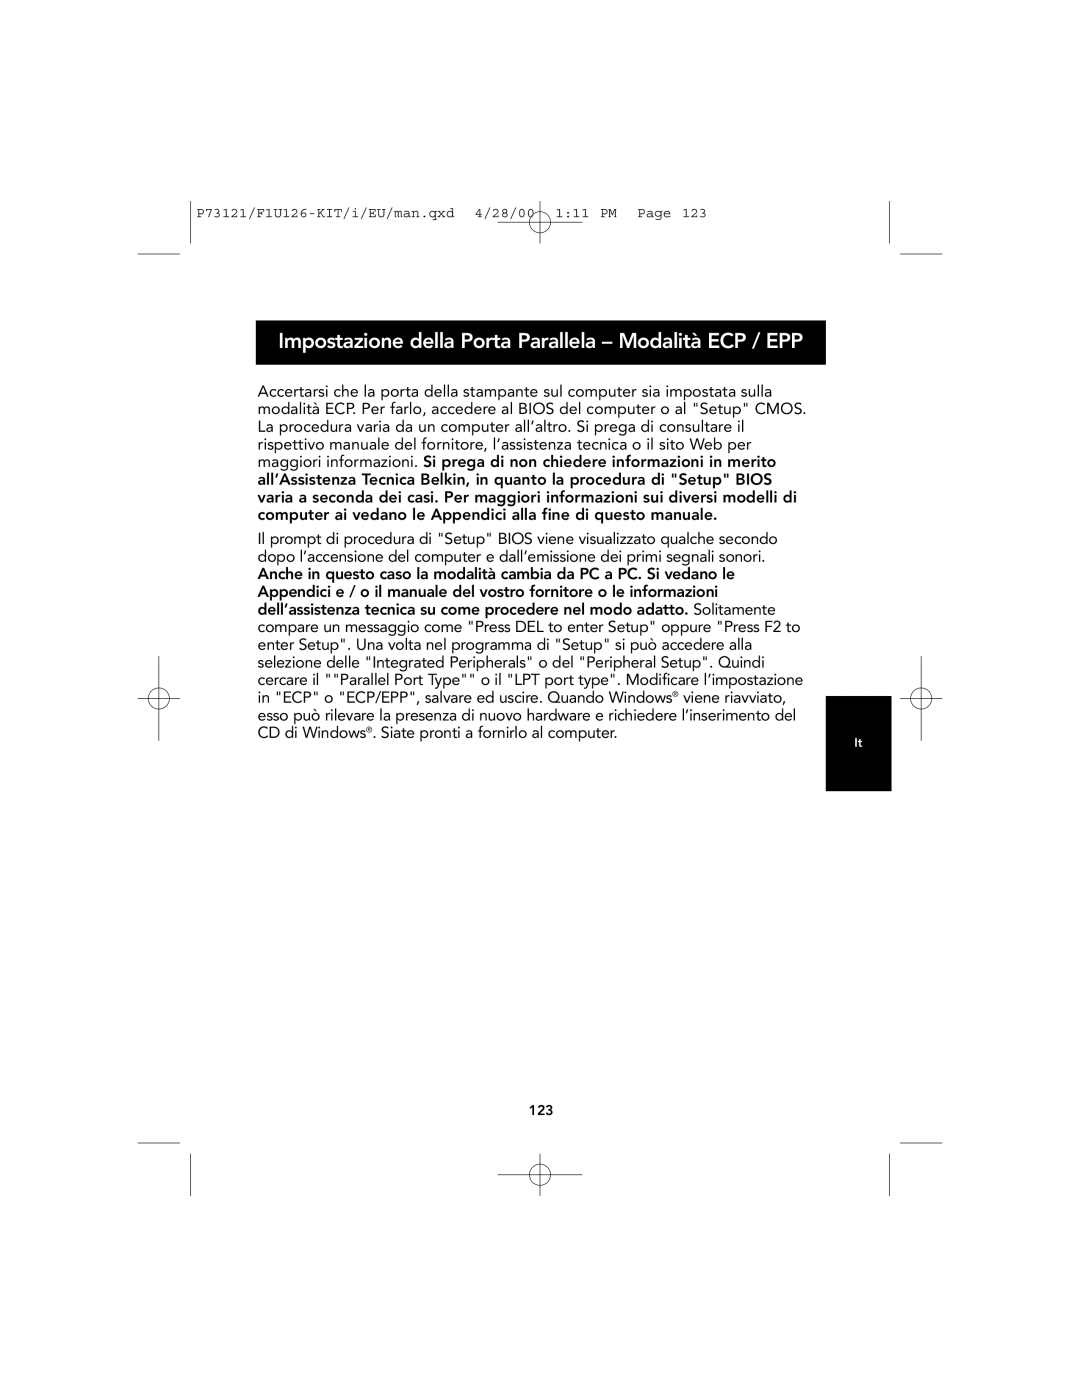 Belkin F1U126-KIT, P73121 user manual Impostazione della Porta Parallela - Modalità ECP / EPP 